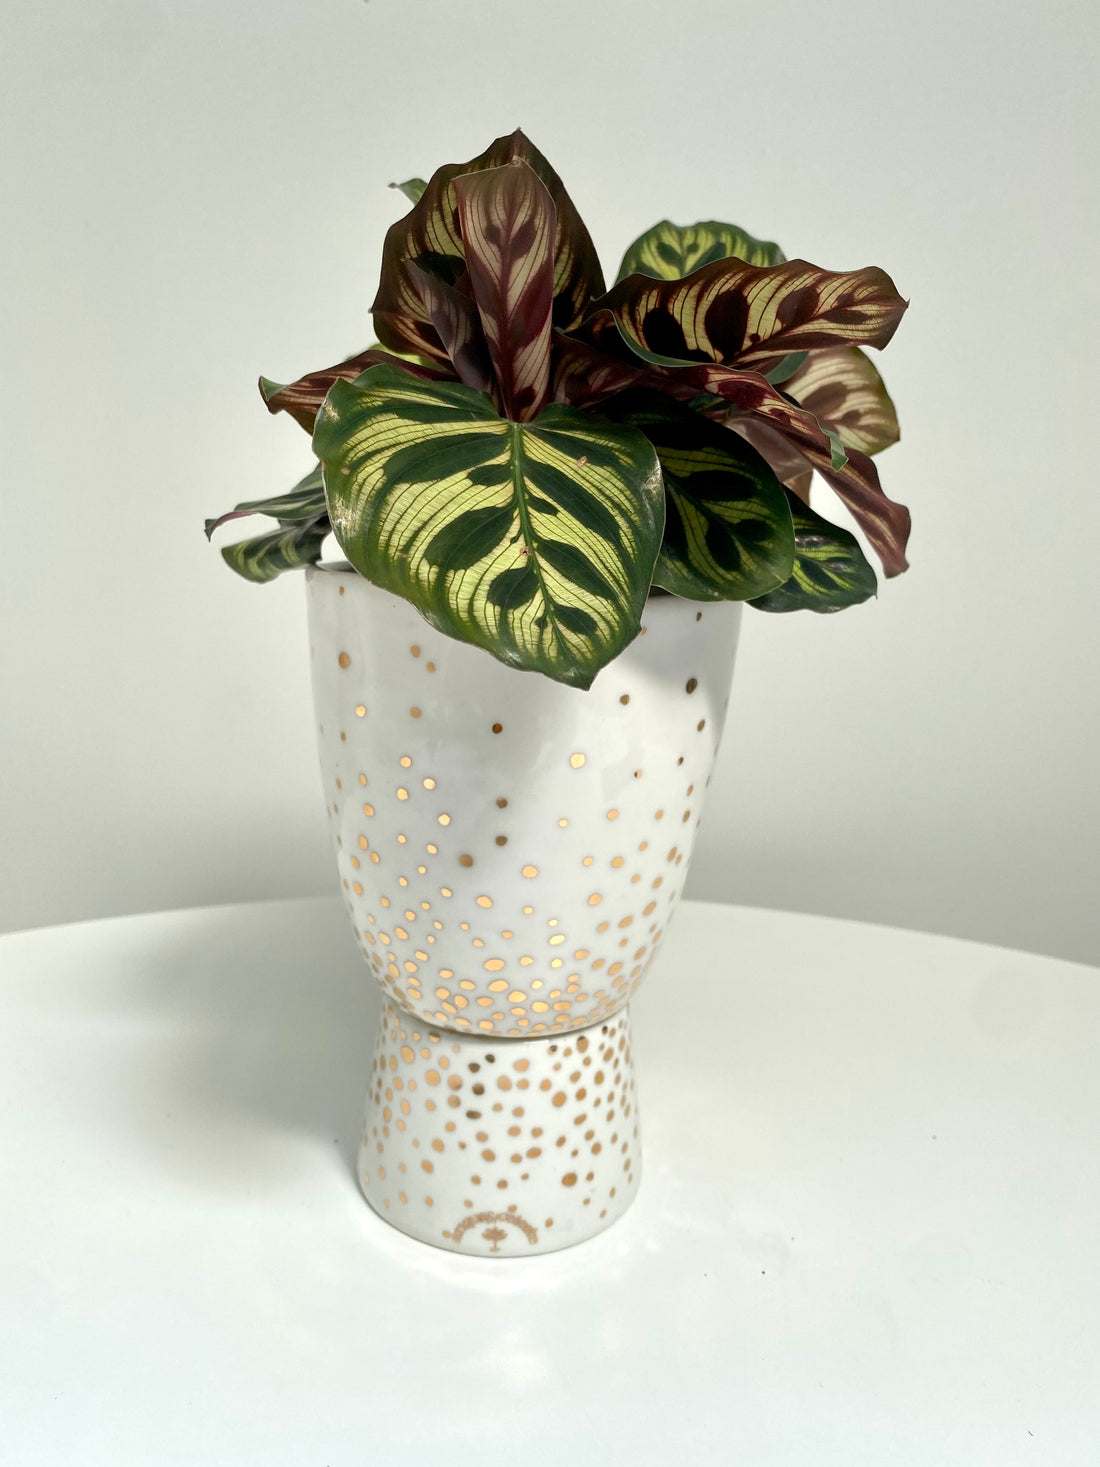 Foliage Plant + Sparkle Pedestal Pot by Angus & Celeste